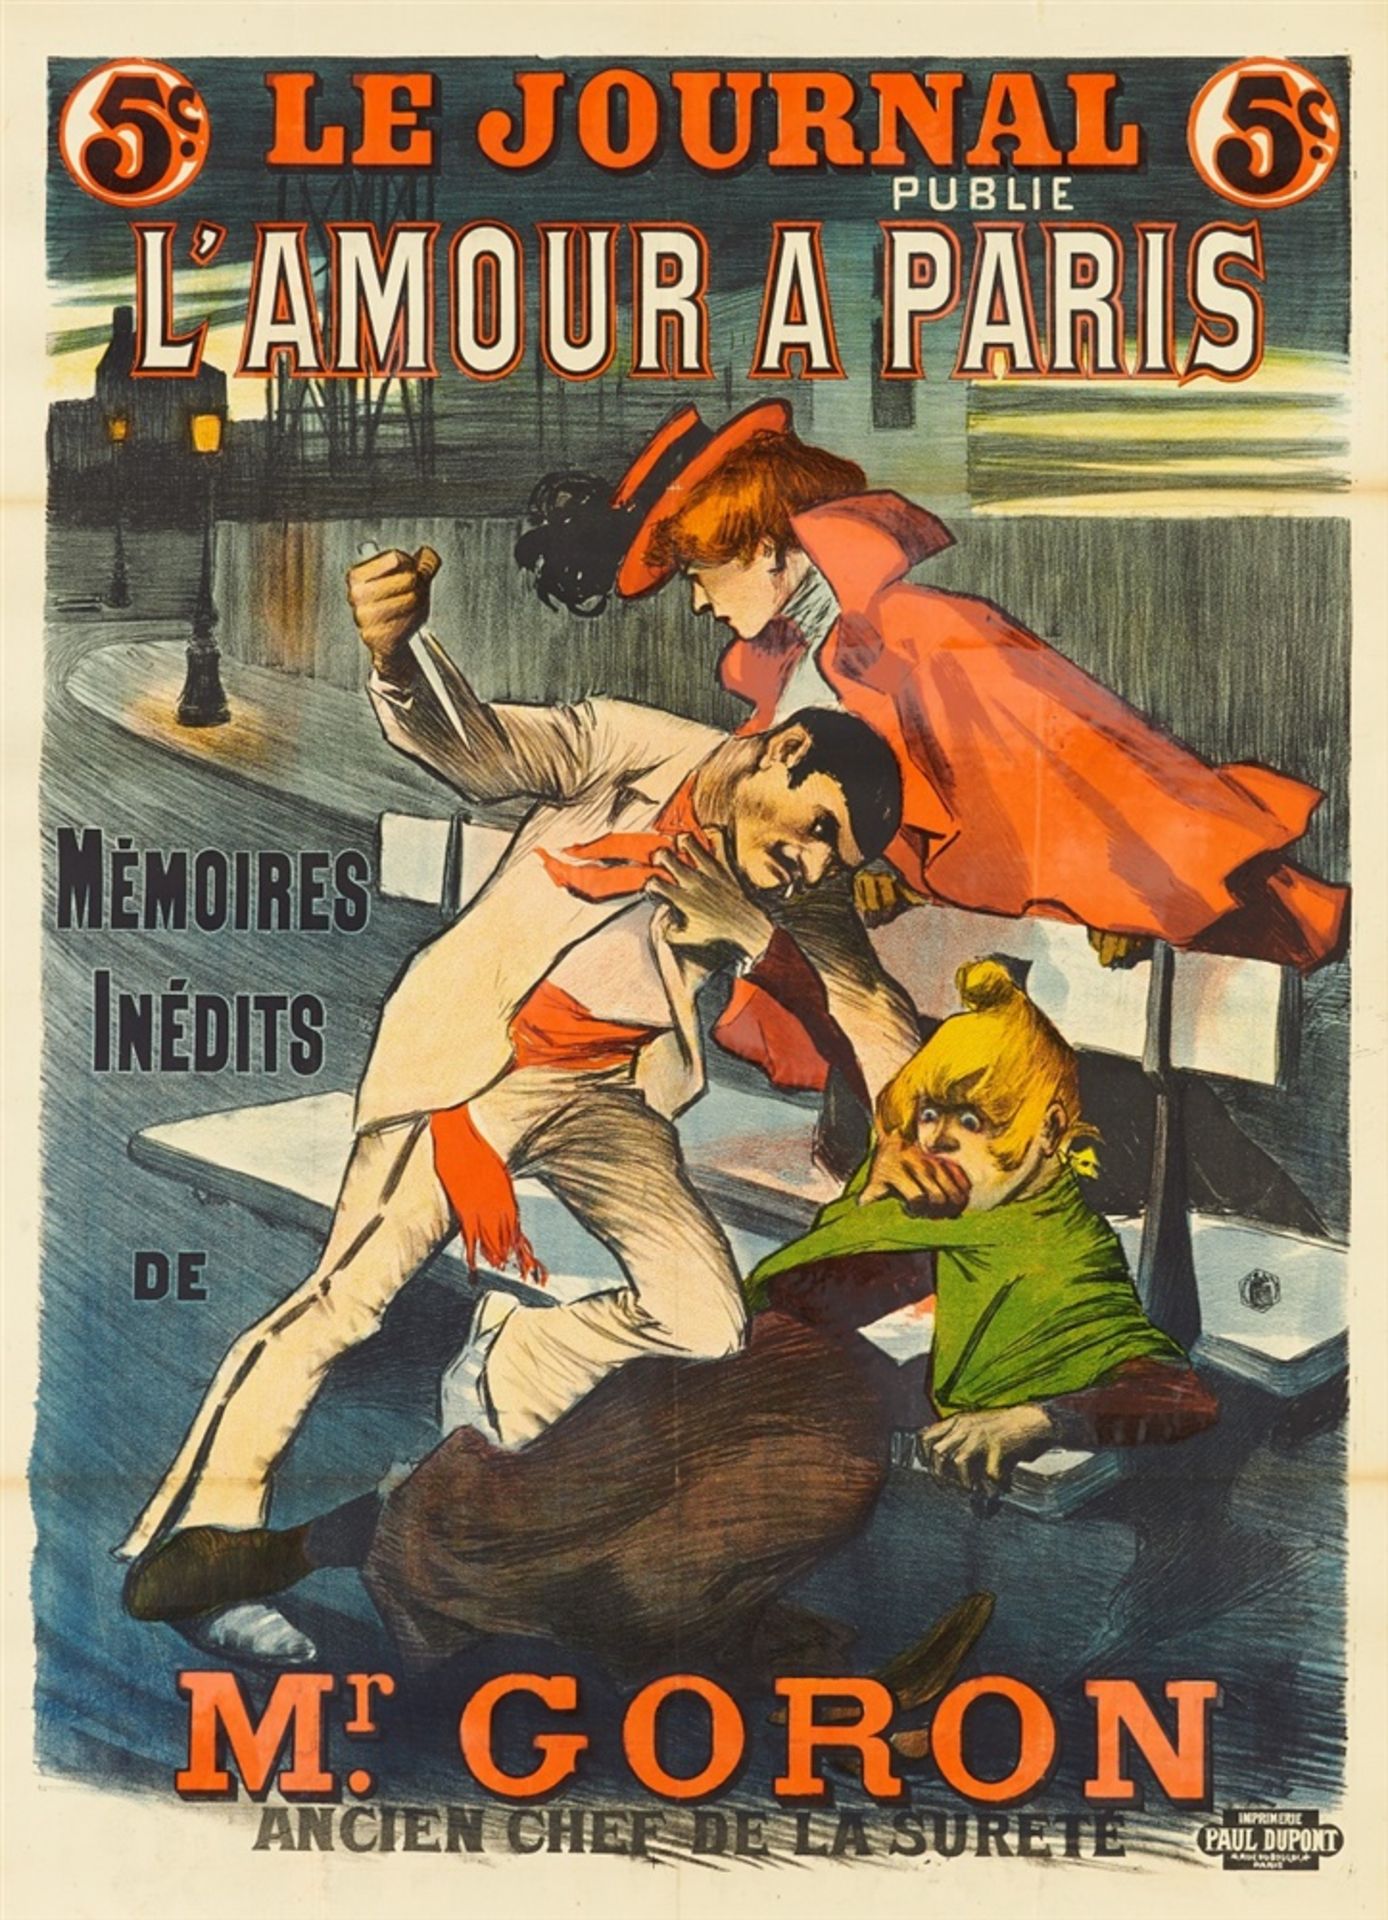 PAUL BALLURIAU 1860 - 1917LE JOURNAL PUBLIE – L'AMOUR A PARIS – MEMOIRES INÉDITS DE MR. GORON –